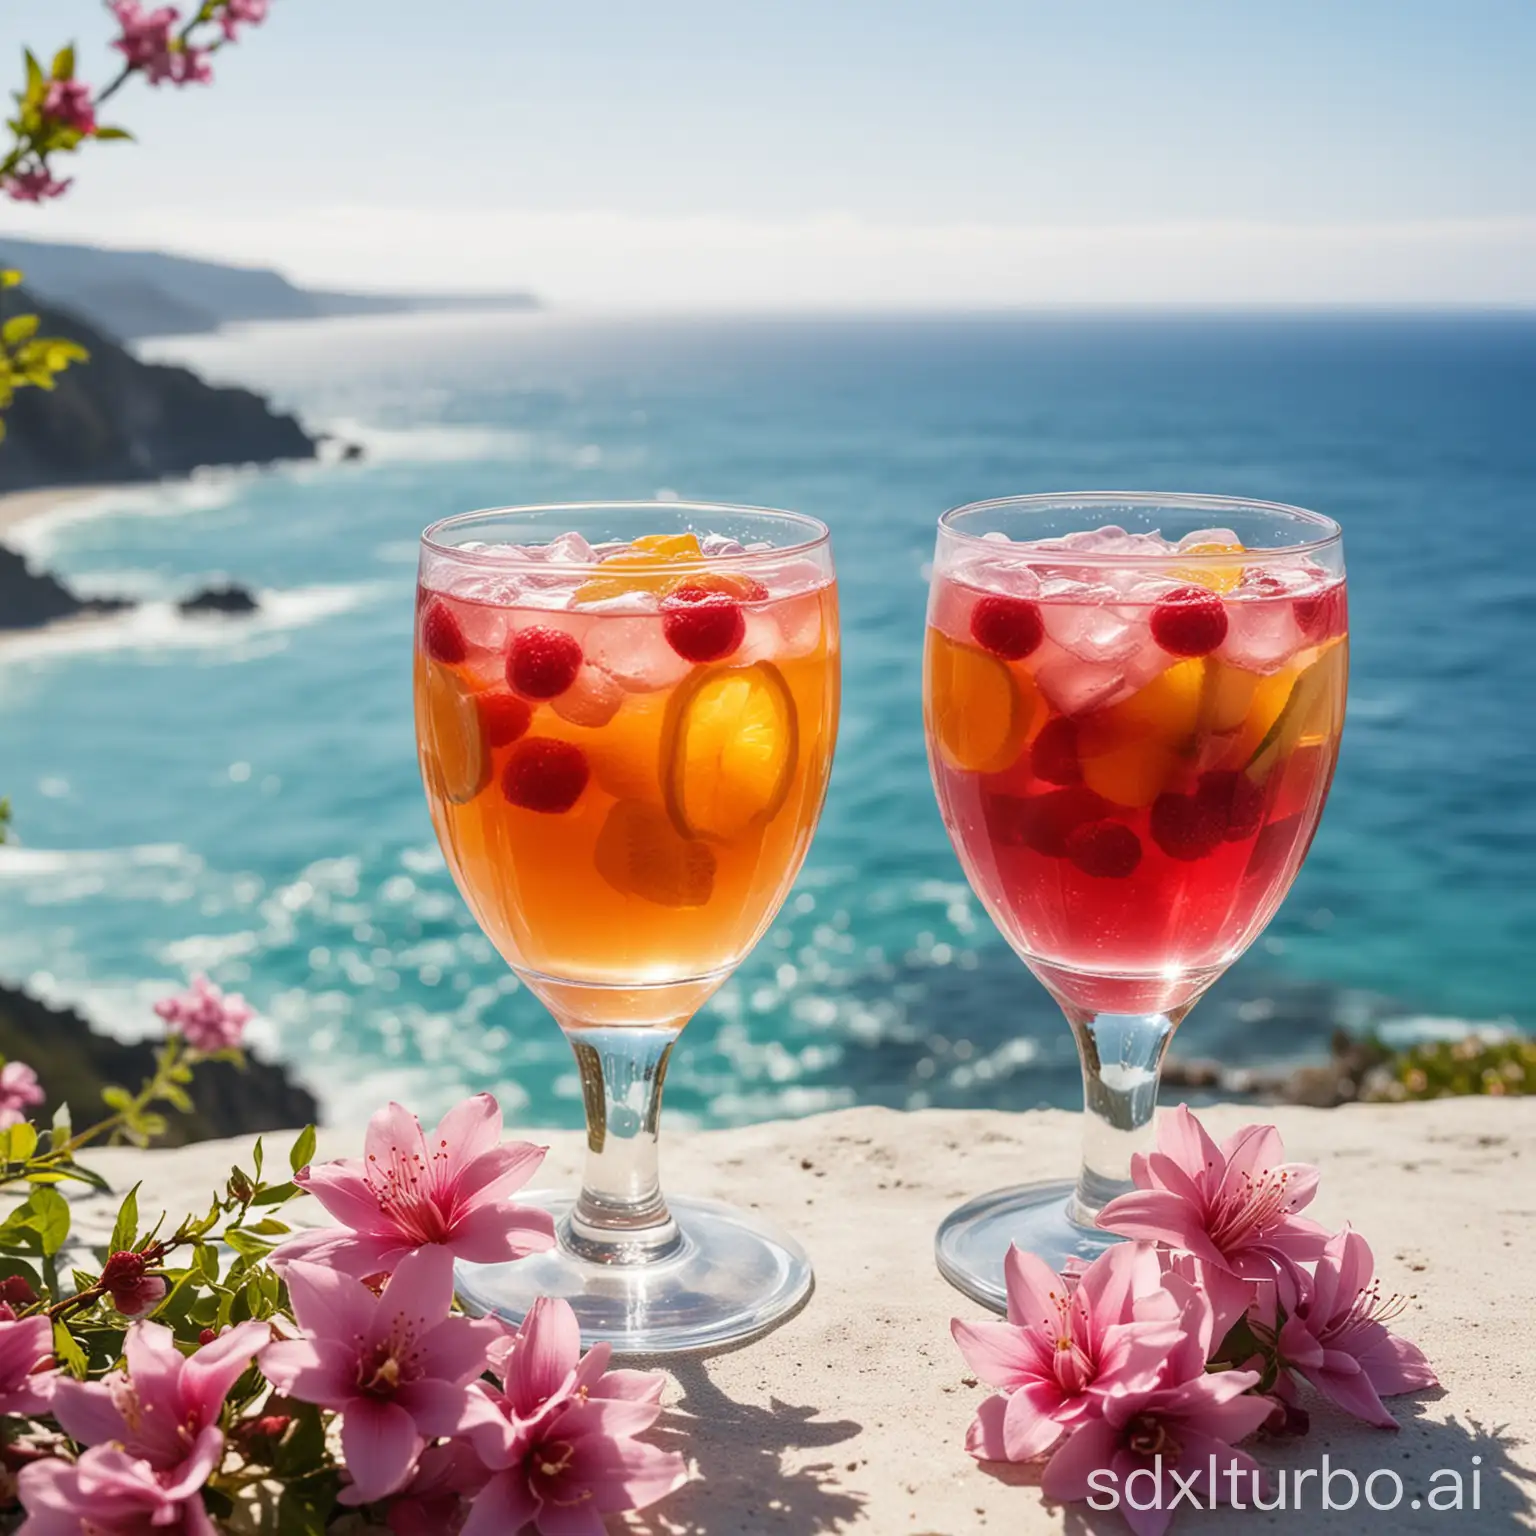 两个透明的杯子装着水果饮料，晶莹透亮，背景海洋布满了美丽花朵